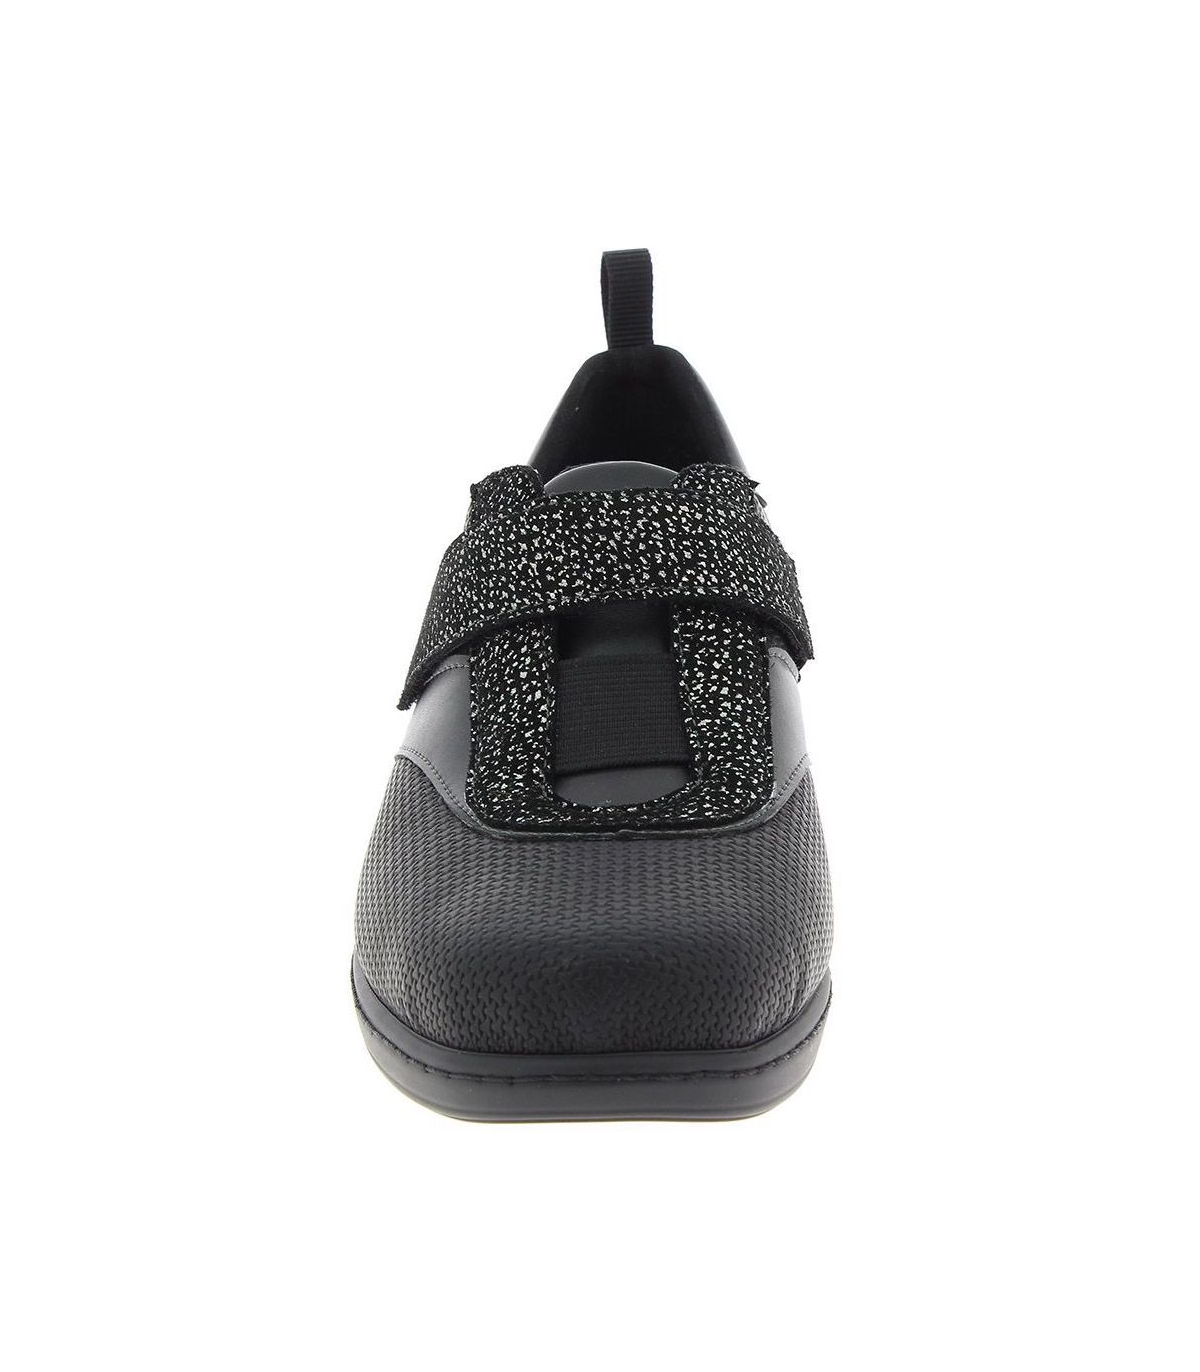 Chaussures orthopédiques femmes / Cambrian / Sandales en cuir noir Taille  40 eur, 9 nous, 7 uk -  France